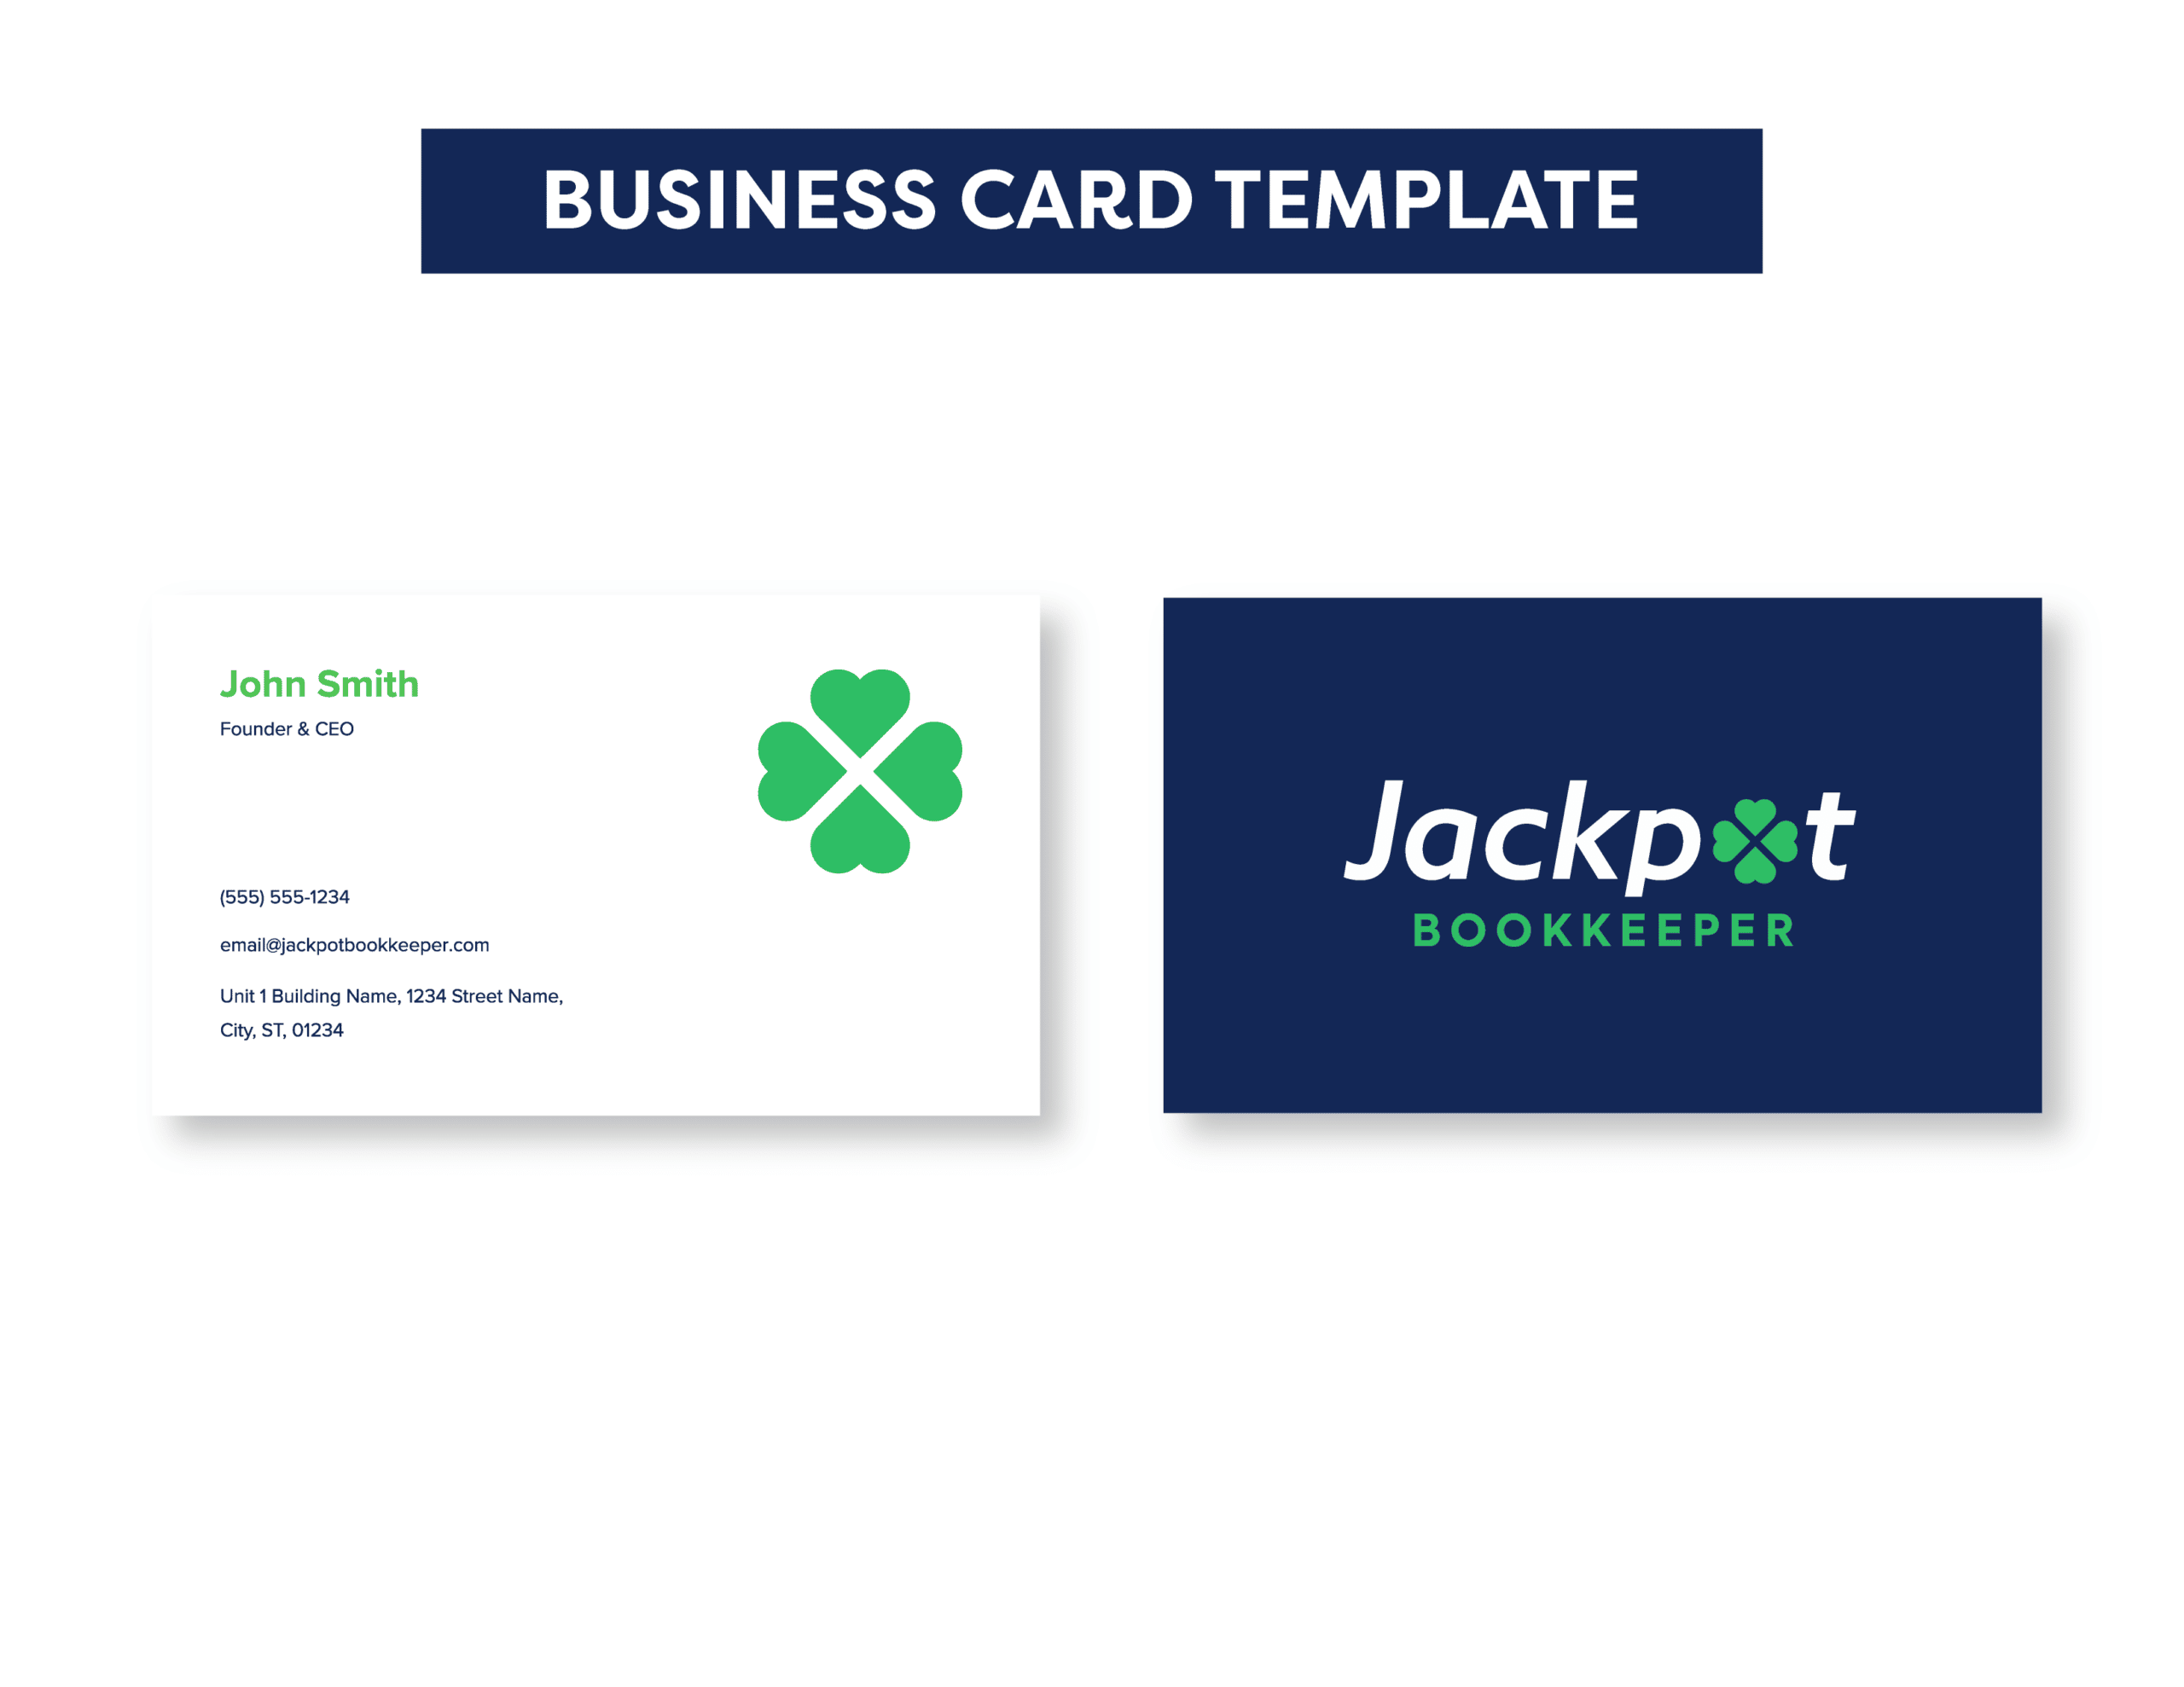 04Jackpot_BK__Business Card Template